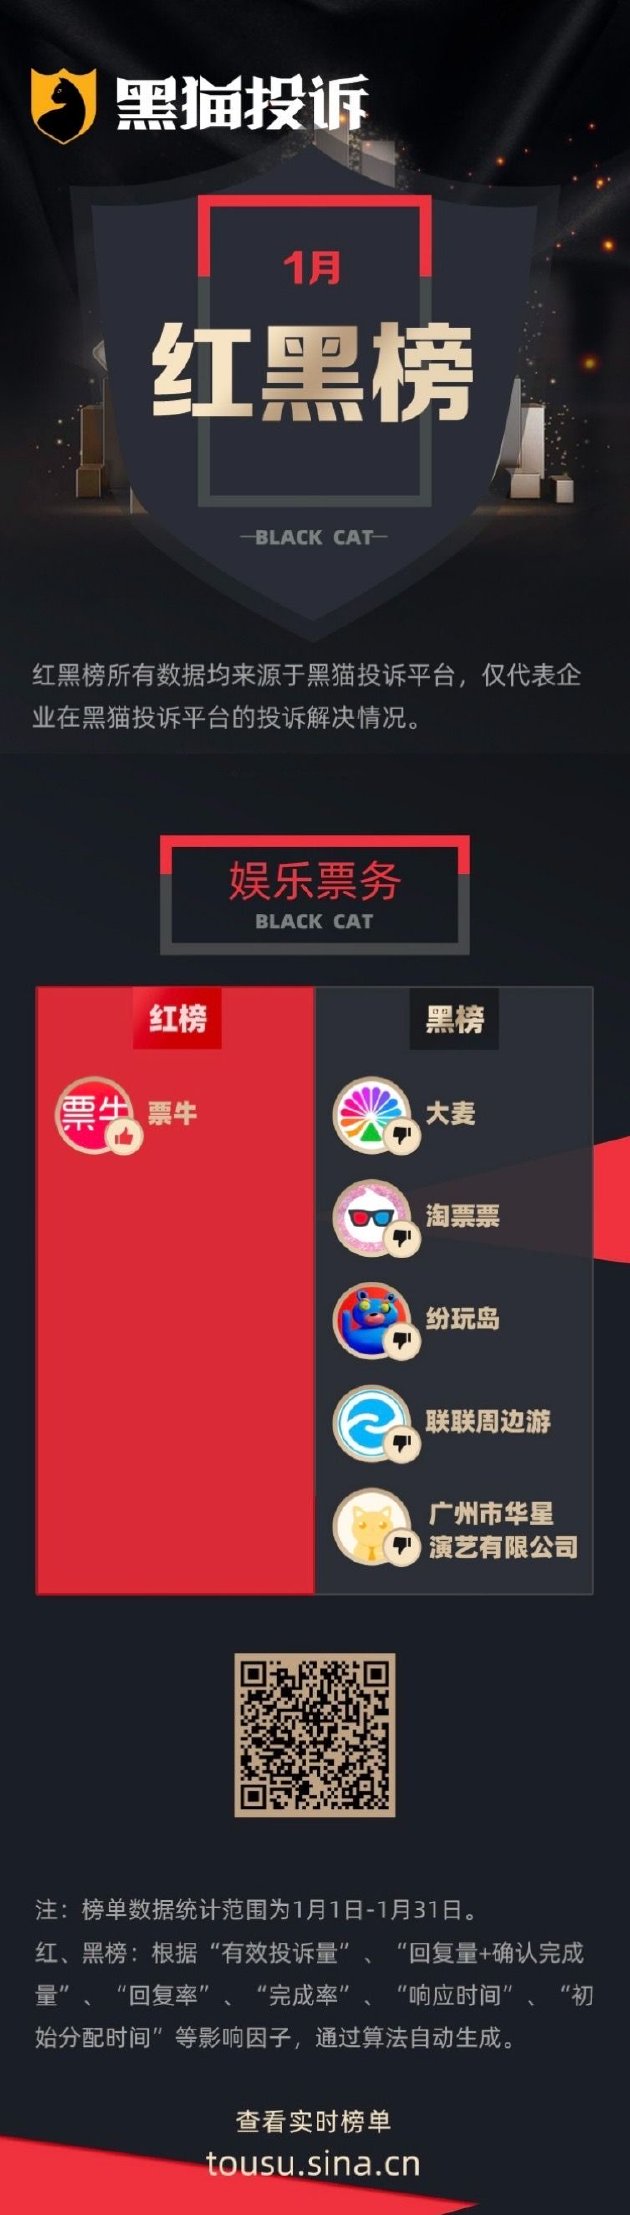 1月黑猫投诉娱乐票务领域红黑榜：大麦演出门票退改难